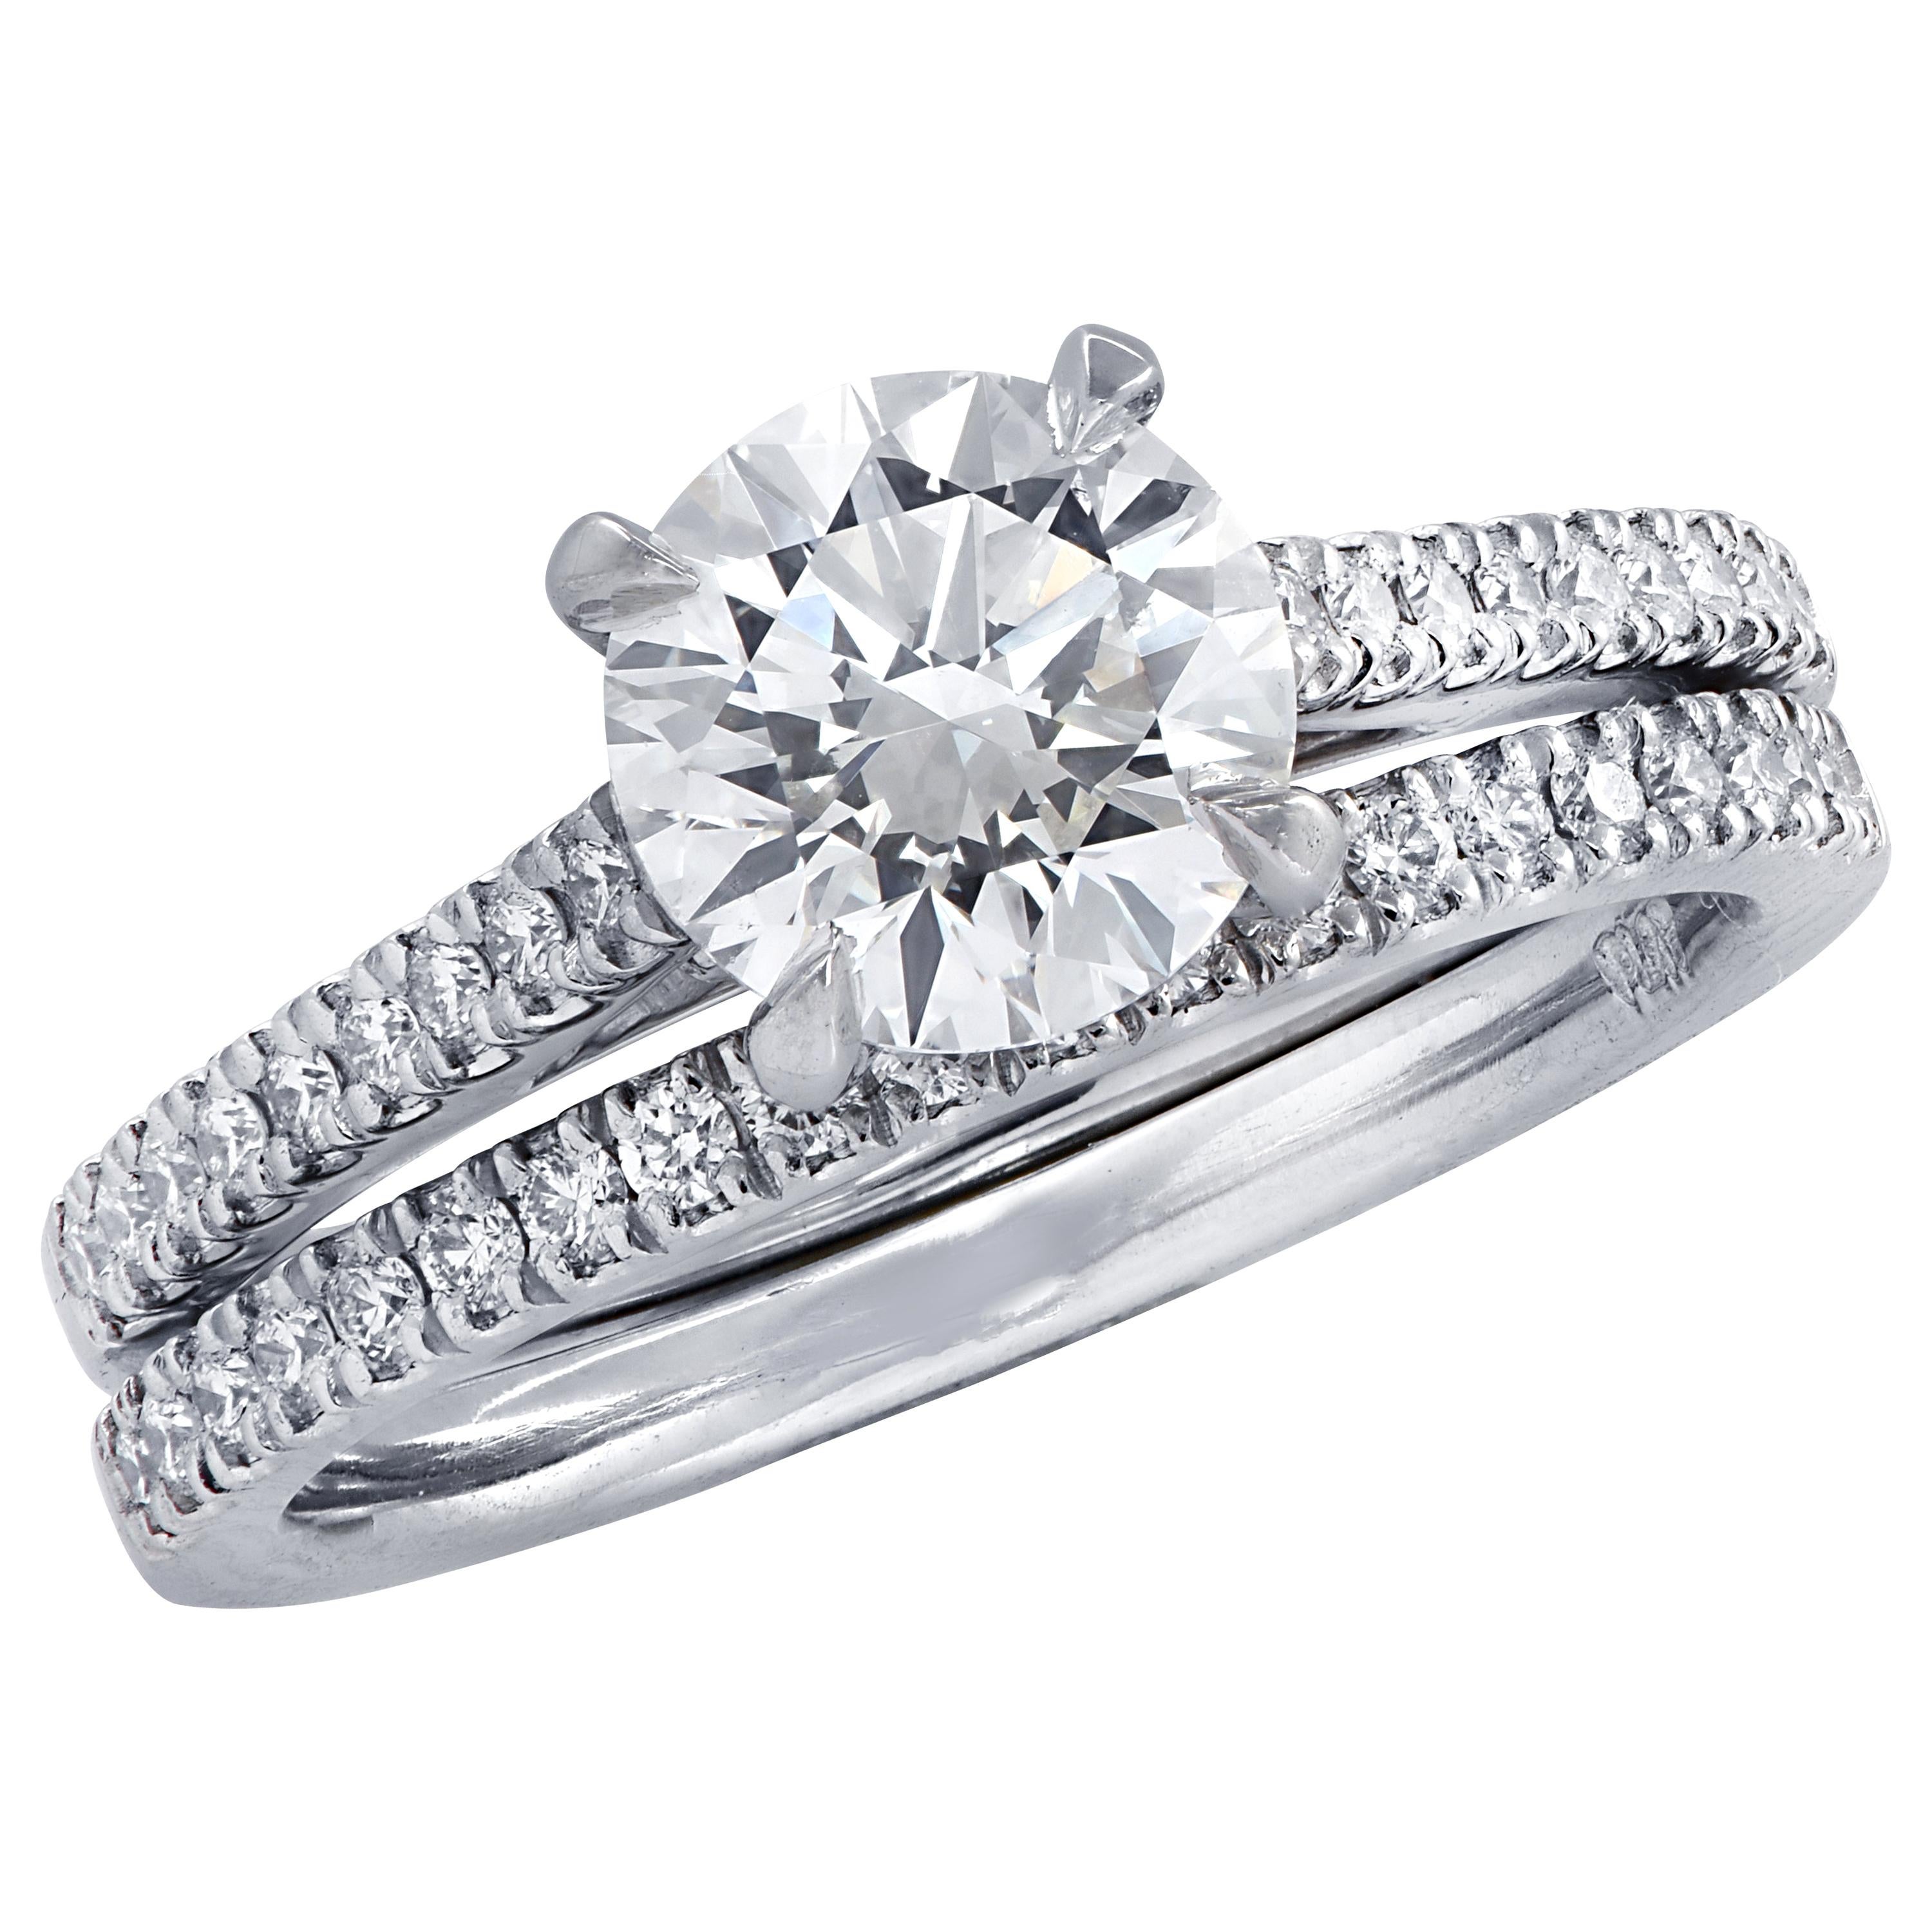 Vivid Diamonds GIA Certified 1.51 Carat Diamond Engagement Ring Set